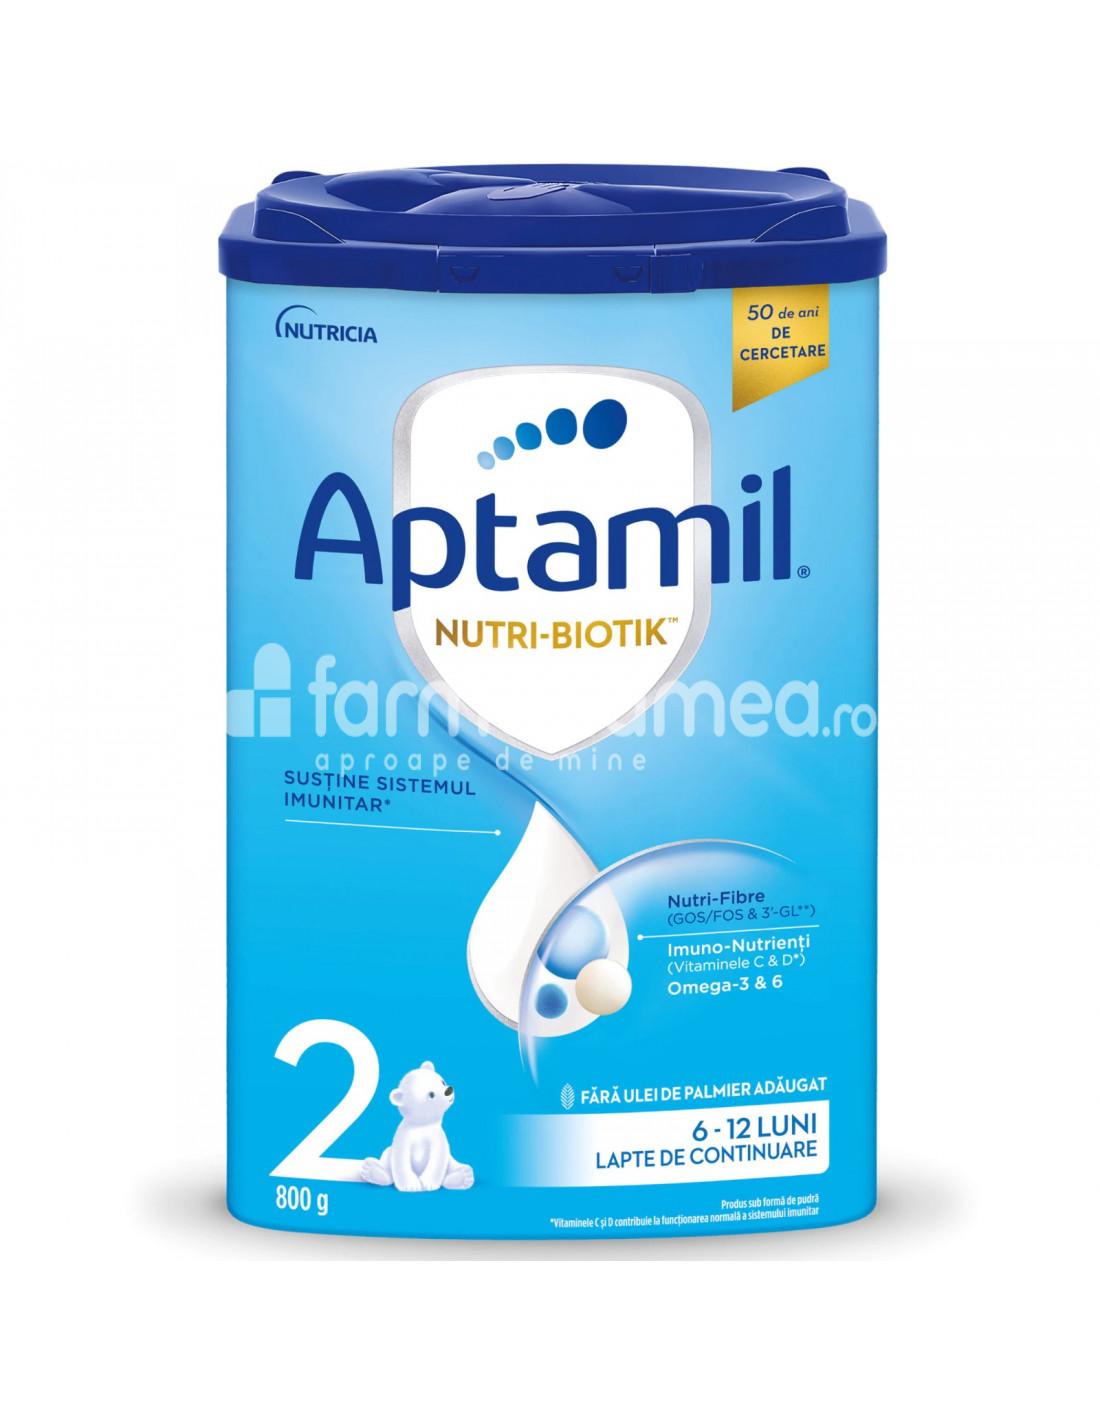 Lapte praf - Aptamil Nutri-Biotik 2, 800g, Nutricia, farmaciamea.ro